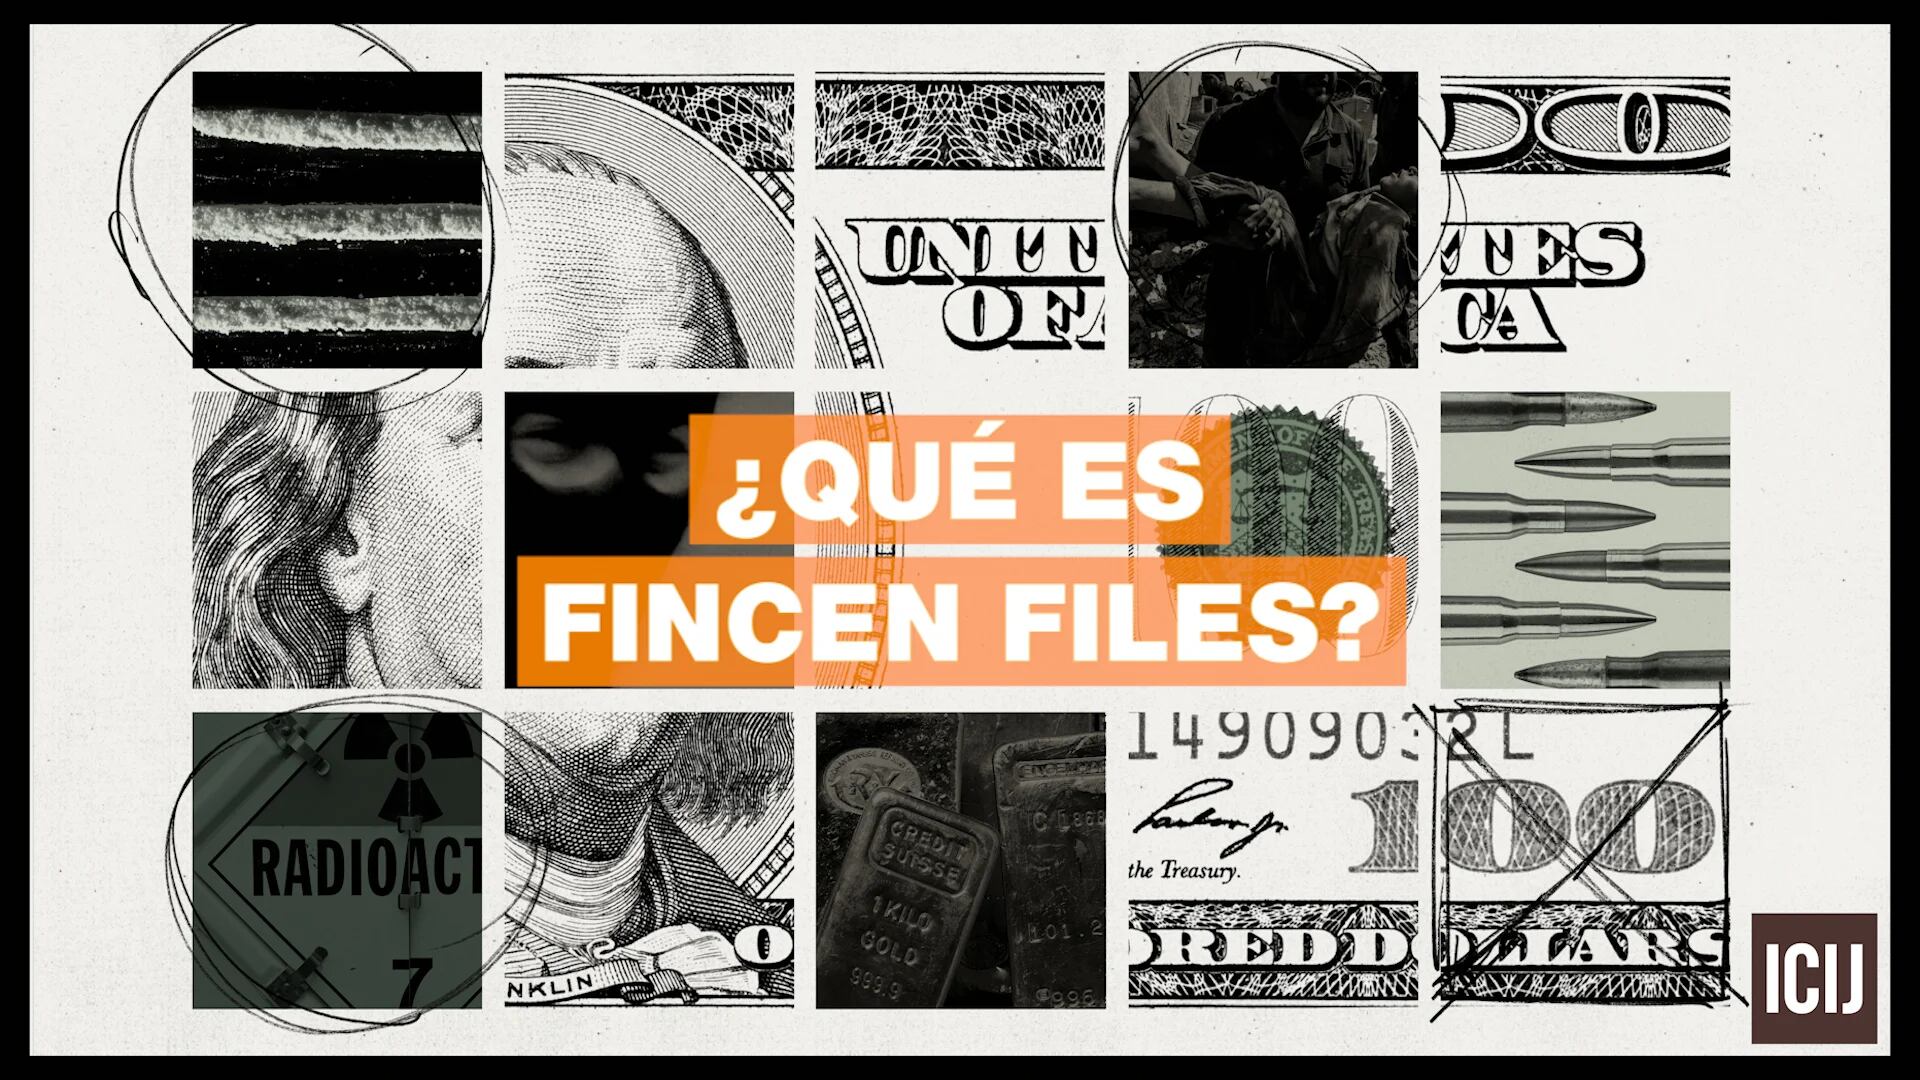 FinCEN Files: una visión sin precedentes del secreto mundo del sistema bancario internacional, clientes anónimos y, en muchos casos, el crimen financiero